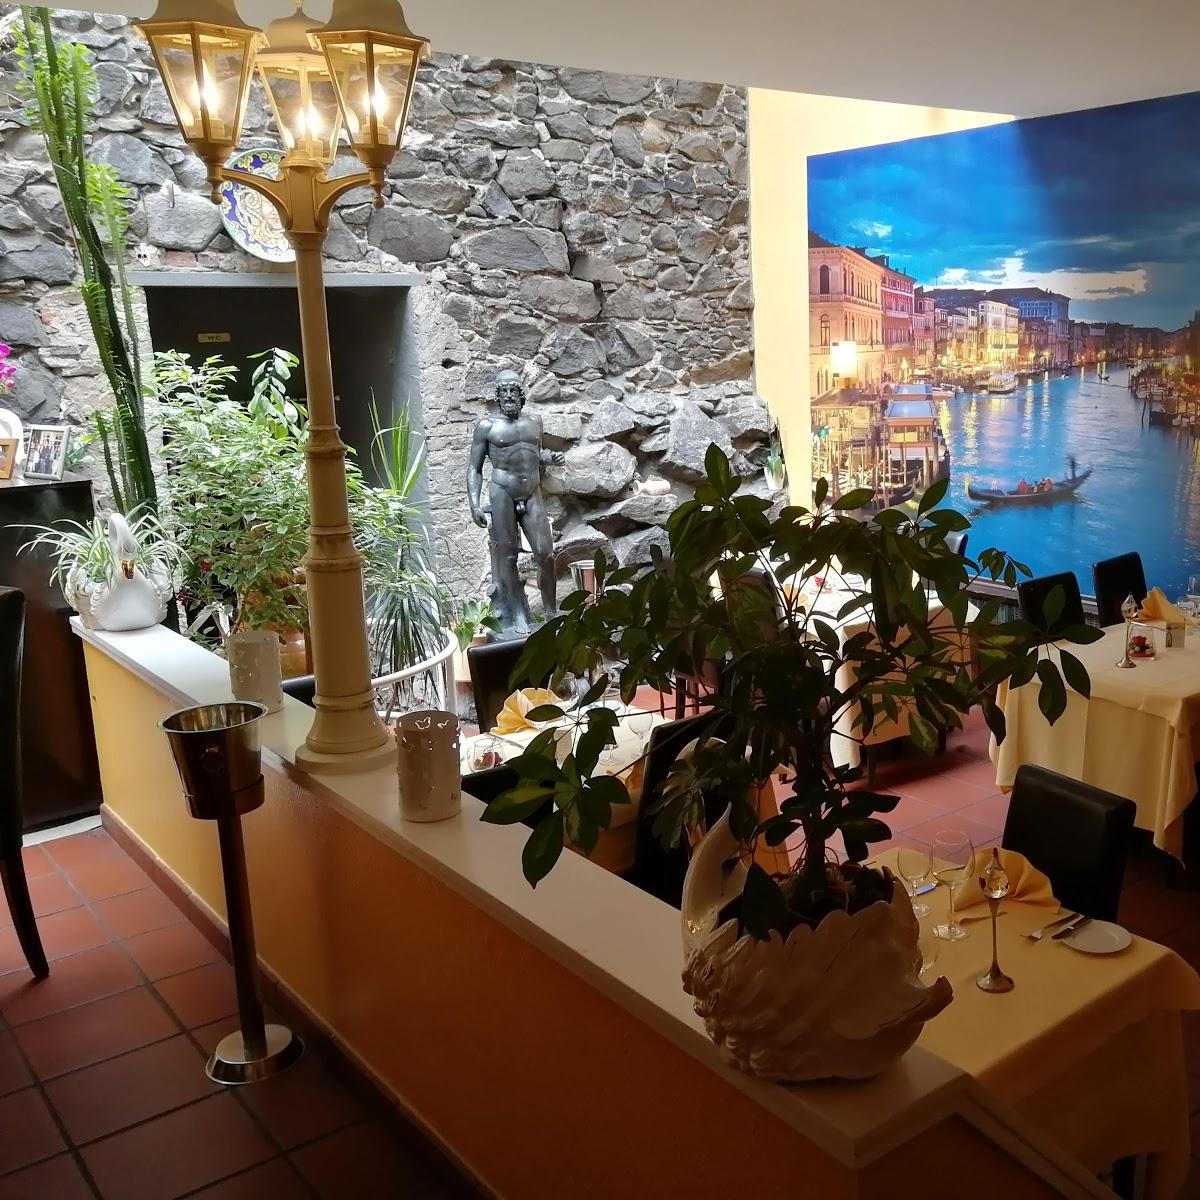 Restaurant "Il Vecchio Muro" in Frankfurt am Main